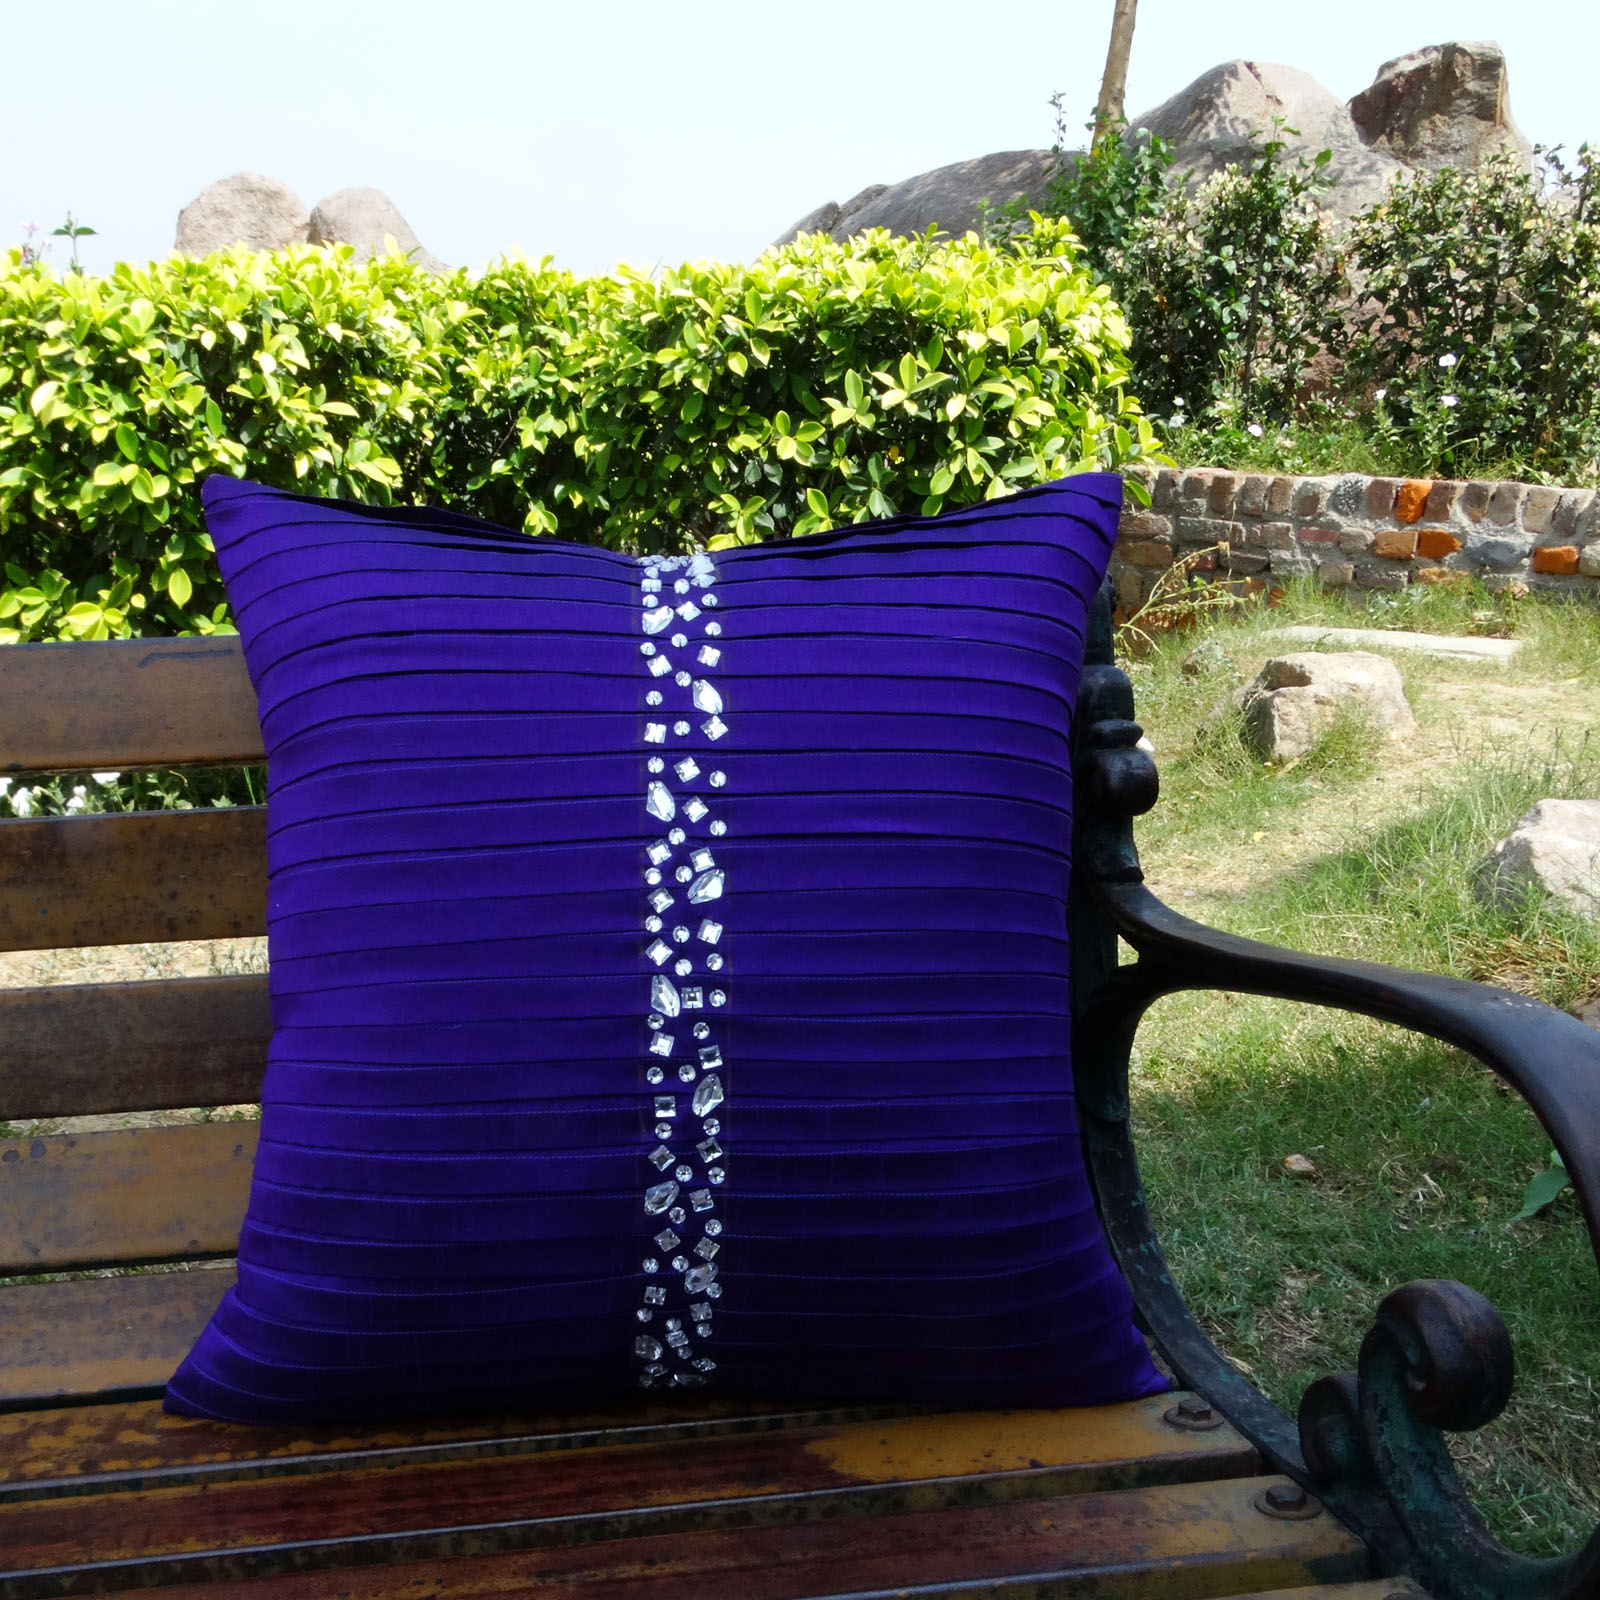 S4Sassy Handcrafted Decorative Cushion Cover Navy Blue Stone Beaded-6Ki 